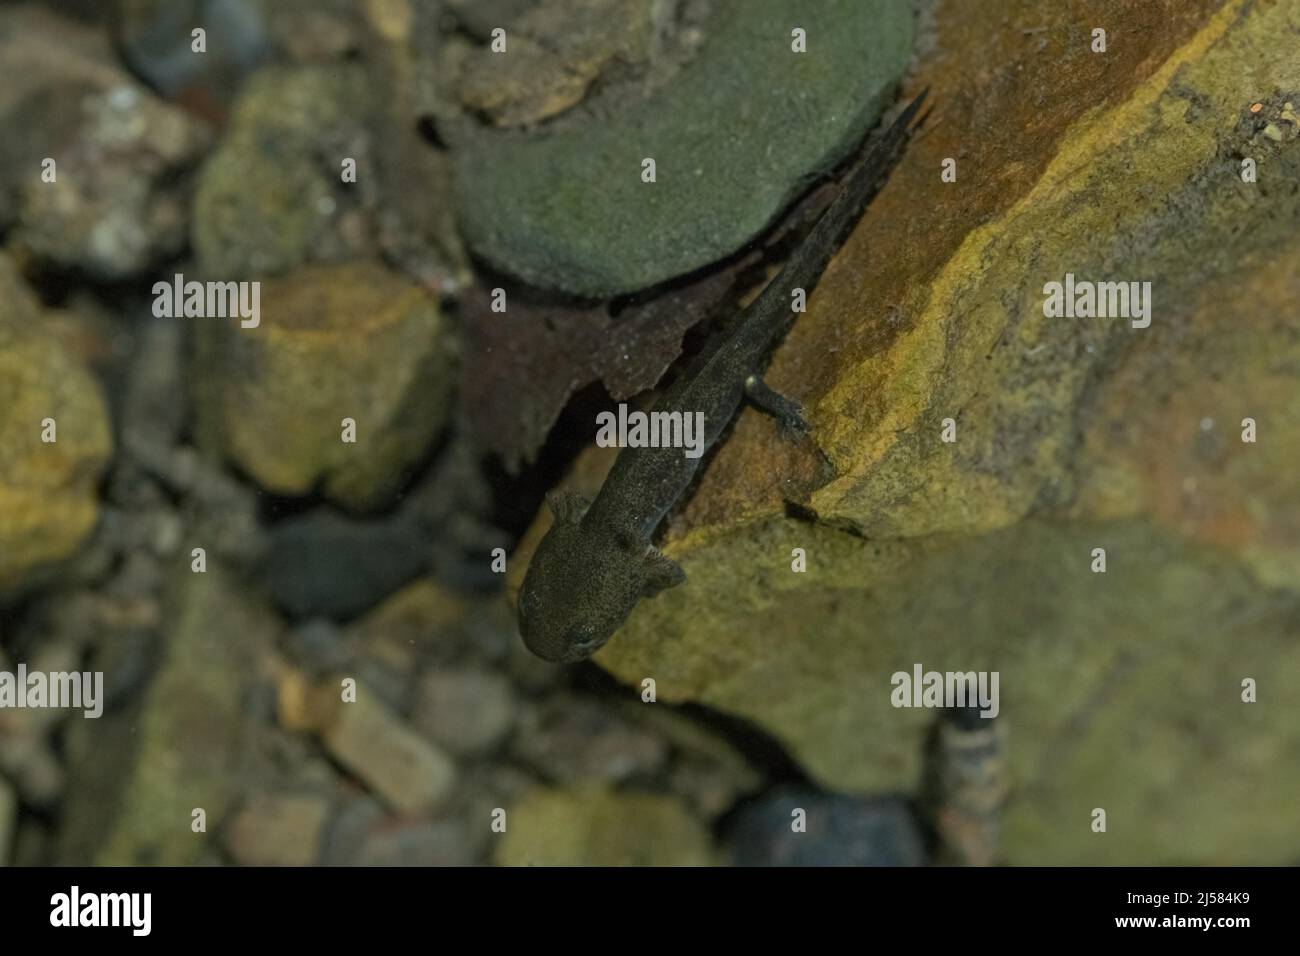 Feuersalamander (Salamandra salamandra), larve am Gewaessergrund, Unterwasseraufnahme, Ruhrgebiet, Deutschland Foto Stock